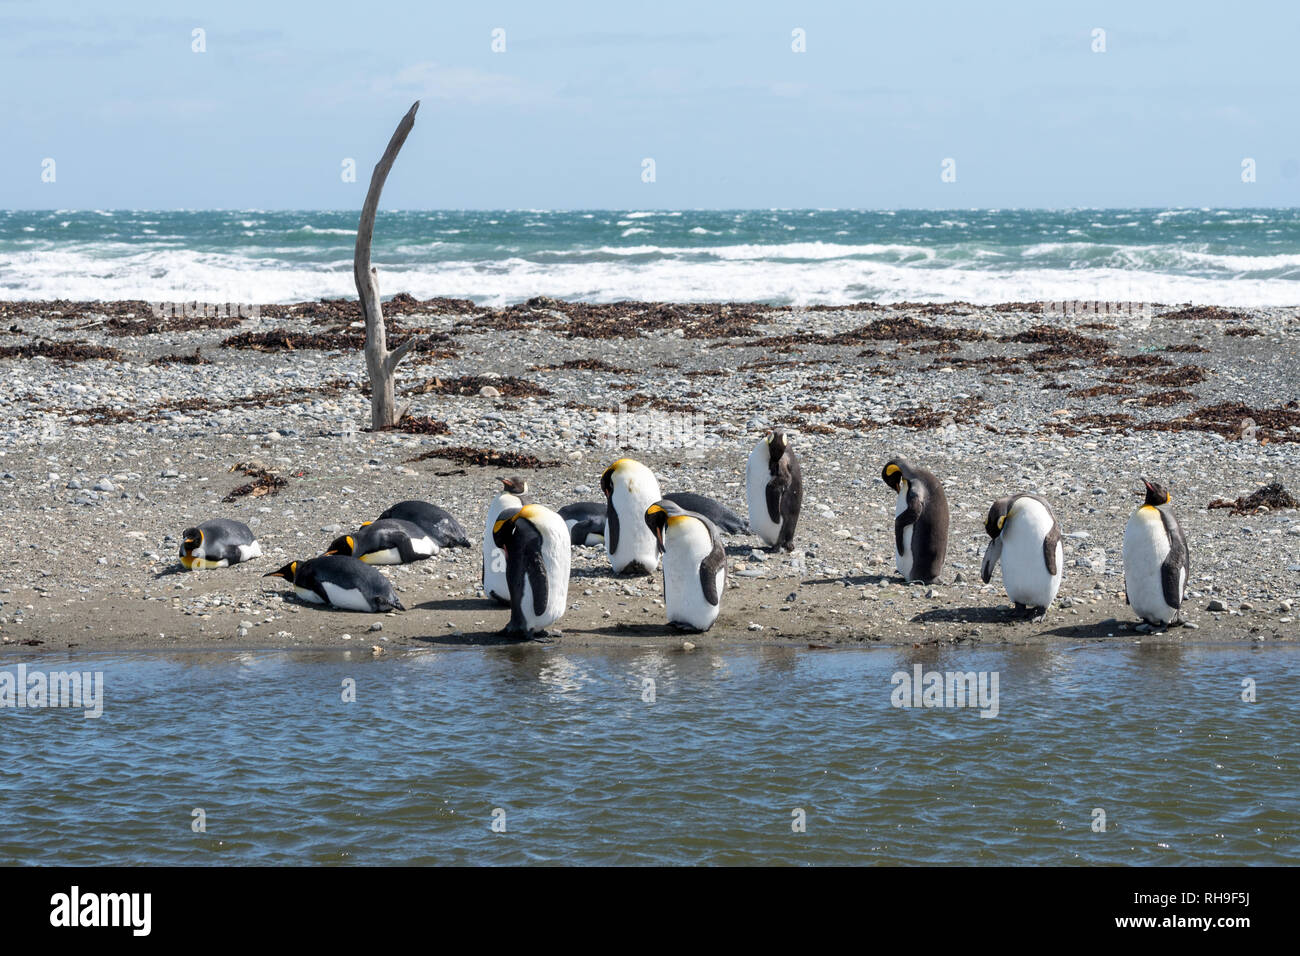 Esta colonia de pingüinos rey acaba de regresar a las costas fueguinas después beeing whiped fuera hace décadas Foto de stock